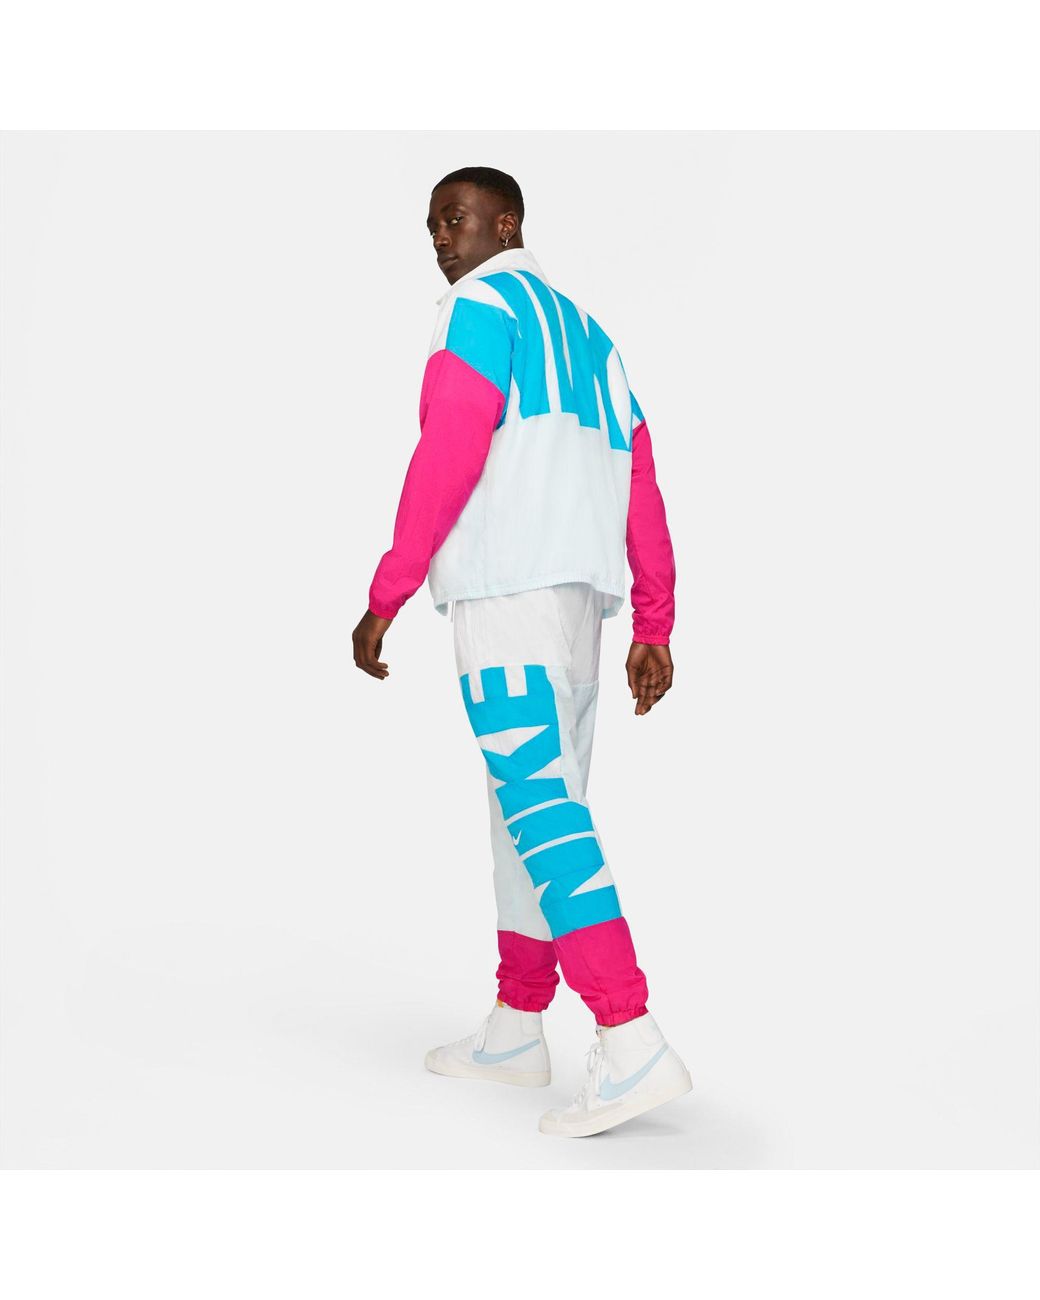 Nike Starting 5 Full Zip Basketball Jacket for Men | Lyst